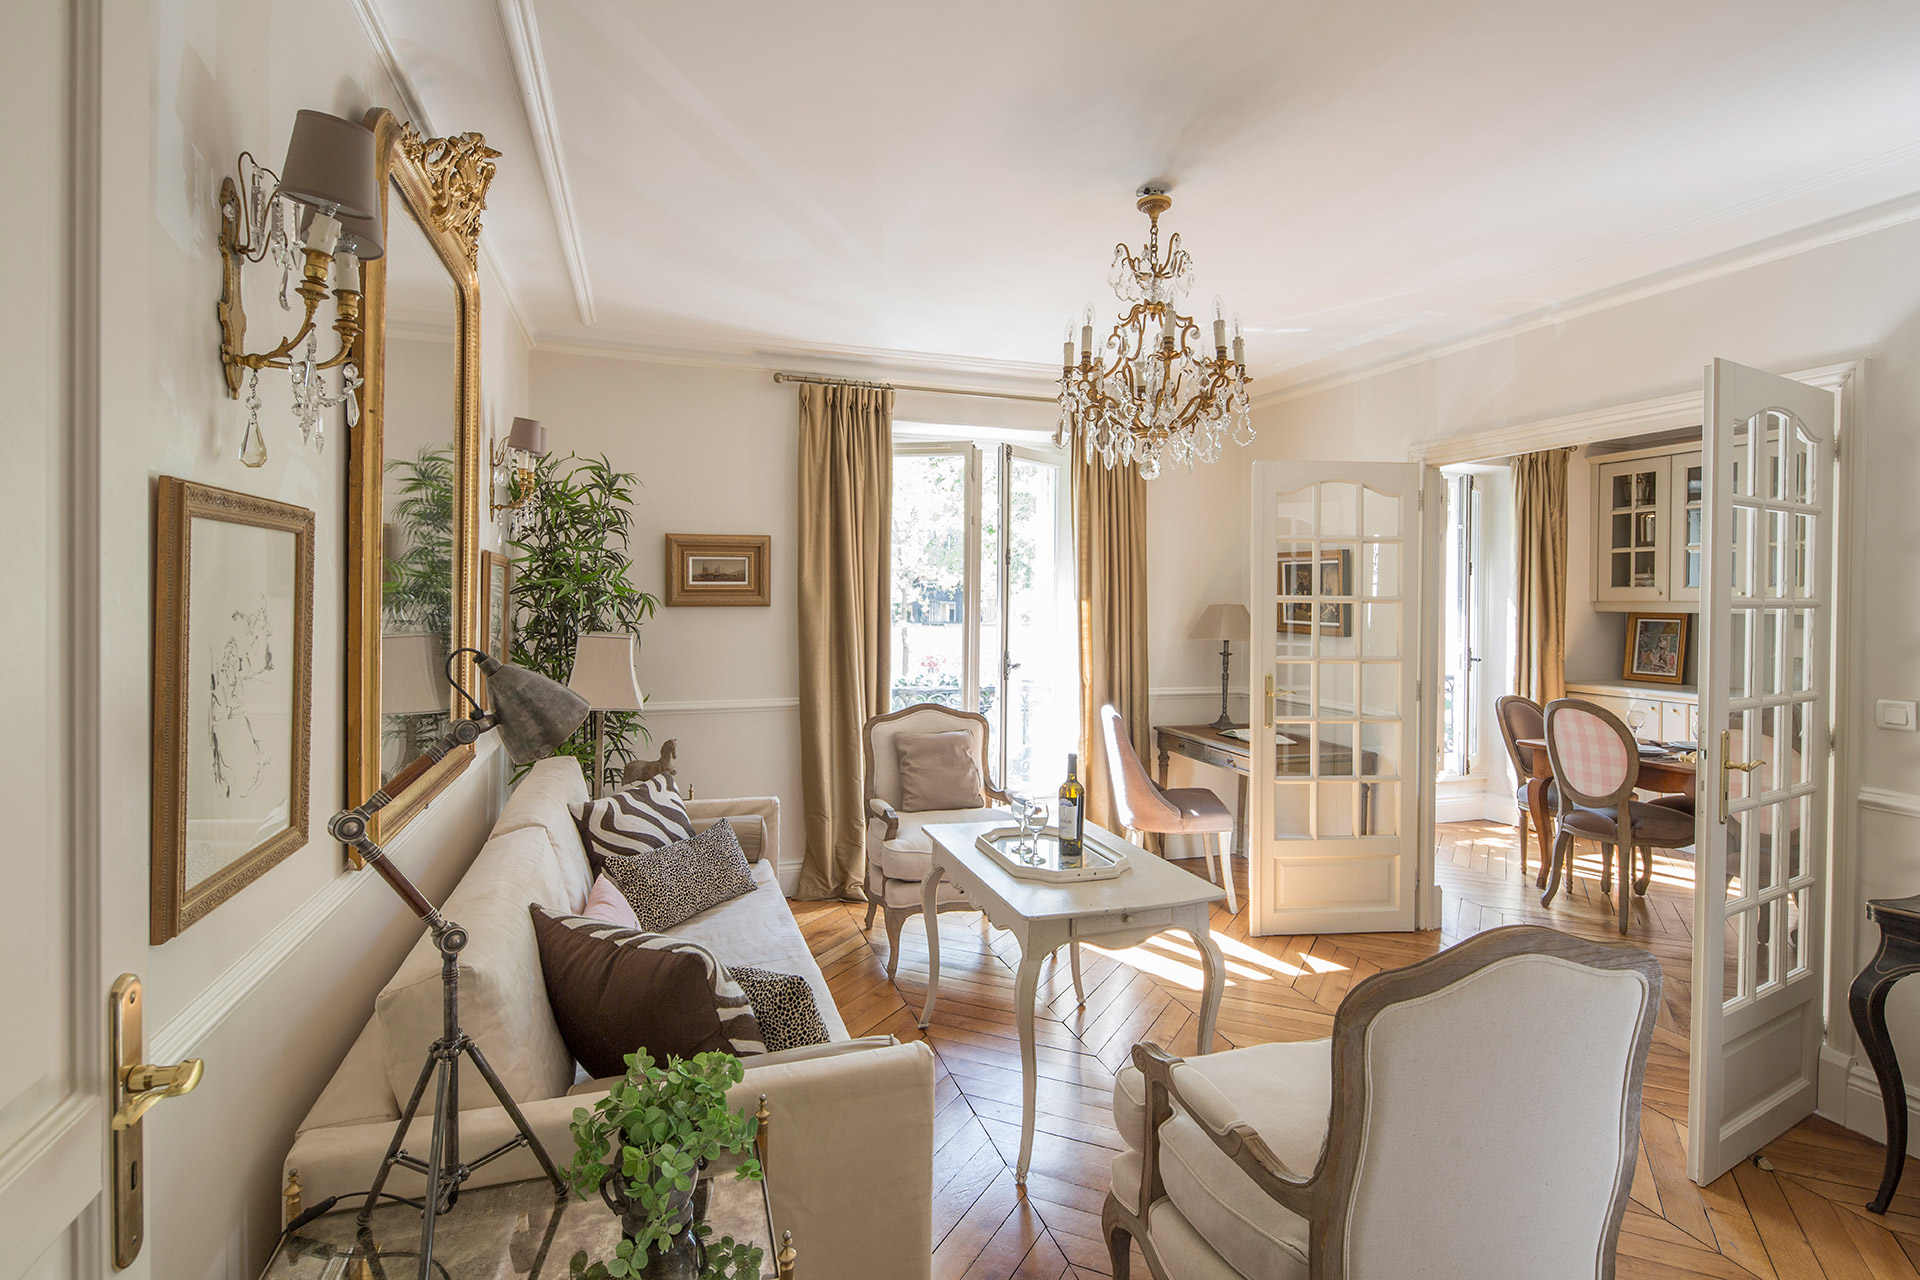 2 Bedroom Paris Apartment Rental In The 7th Arrondissement